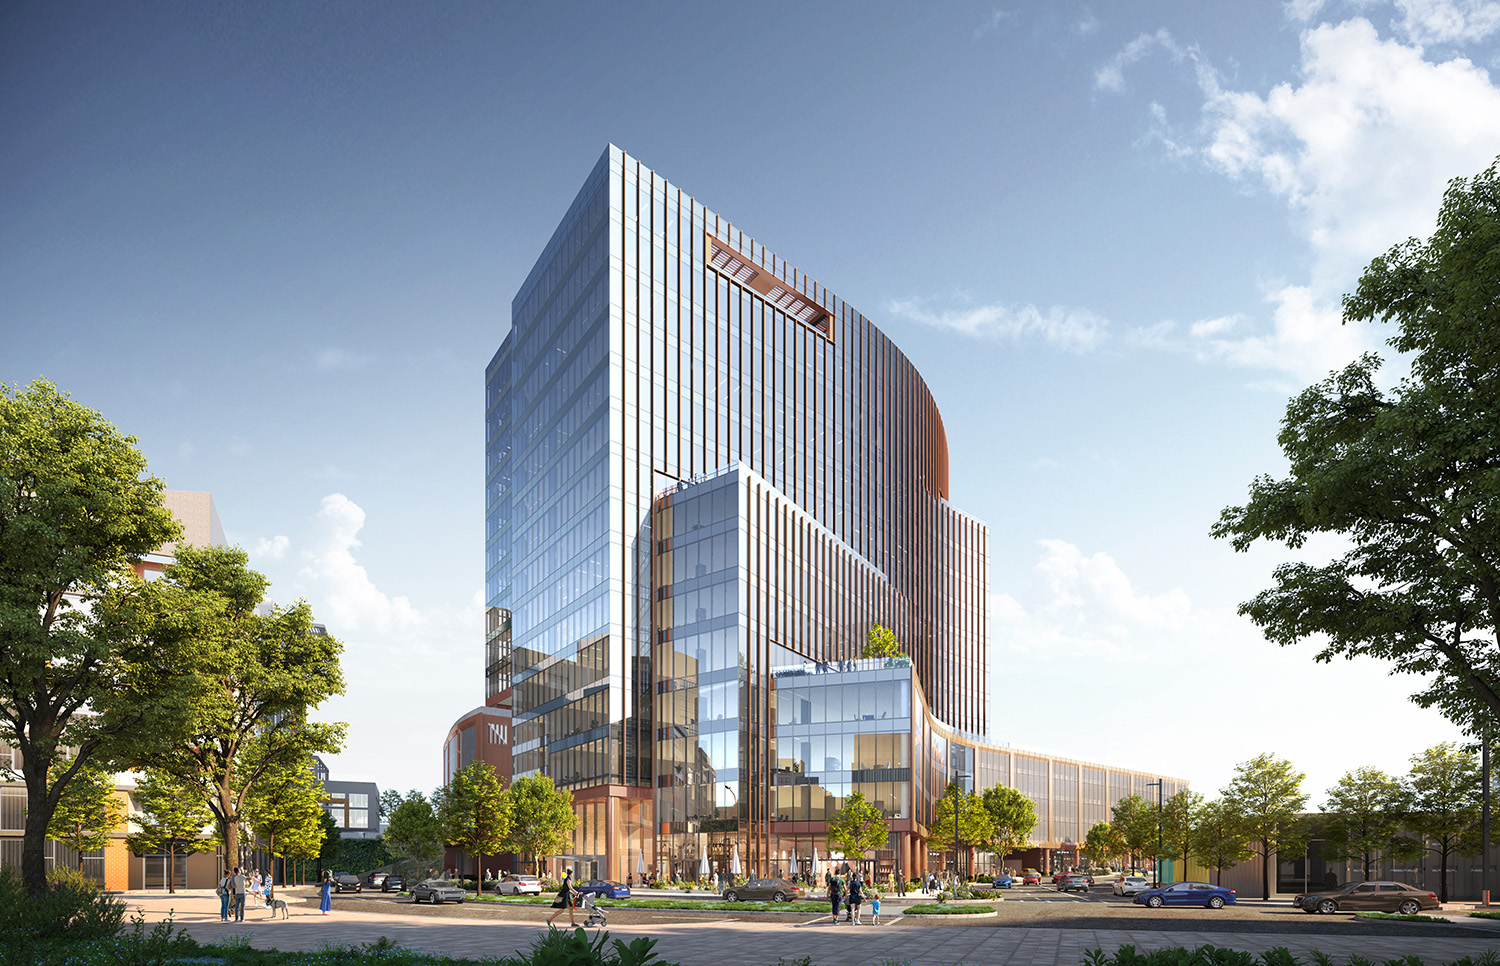 Vor kurzem wurde mit dem Bau des 5 City Blvd begonnen, einem 15-stöckigen Büro- und Mischnutzungsgebäude in Nashville.  Mit freundlicher Genehmigung von Goettsch Partners